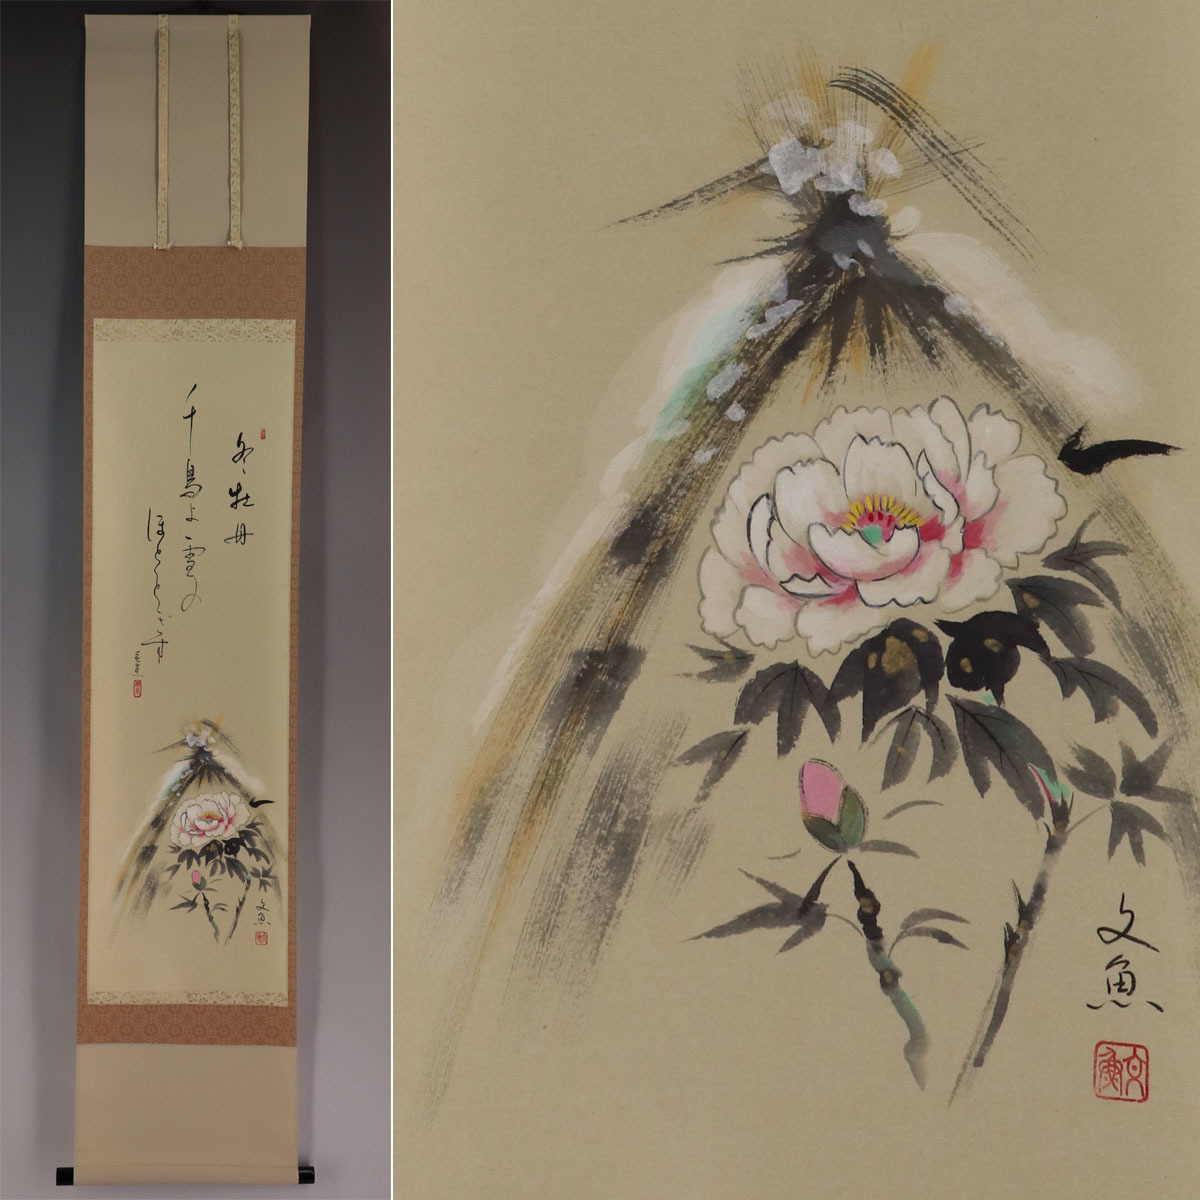 [Authentisches Werk] Fumio Nakatani [Kan Peony] ◆ Taschenbuch ◆ Gleiche Box ◆ Hängerolle v12110, Malerei, Japanische Malerei, Blumen und Vögel, Vögel und Tiere